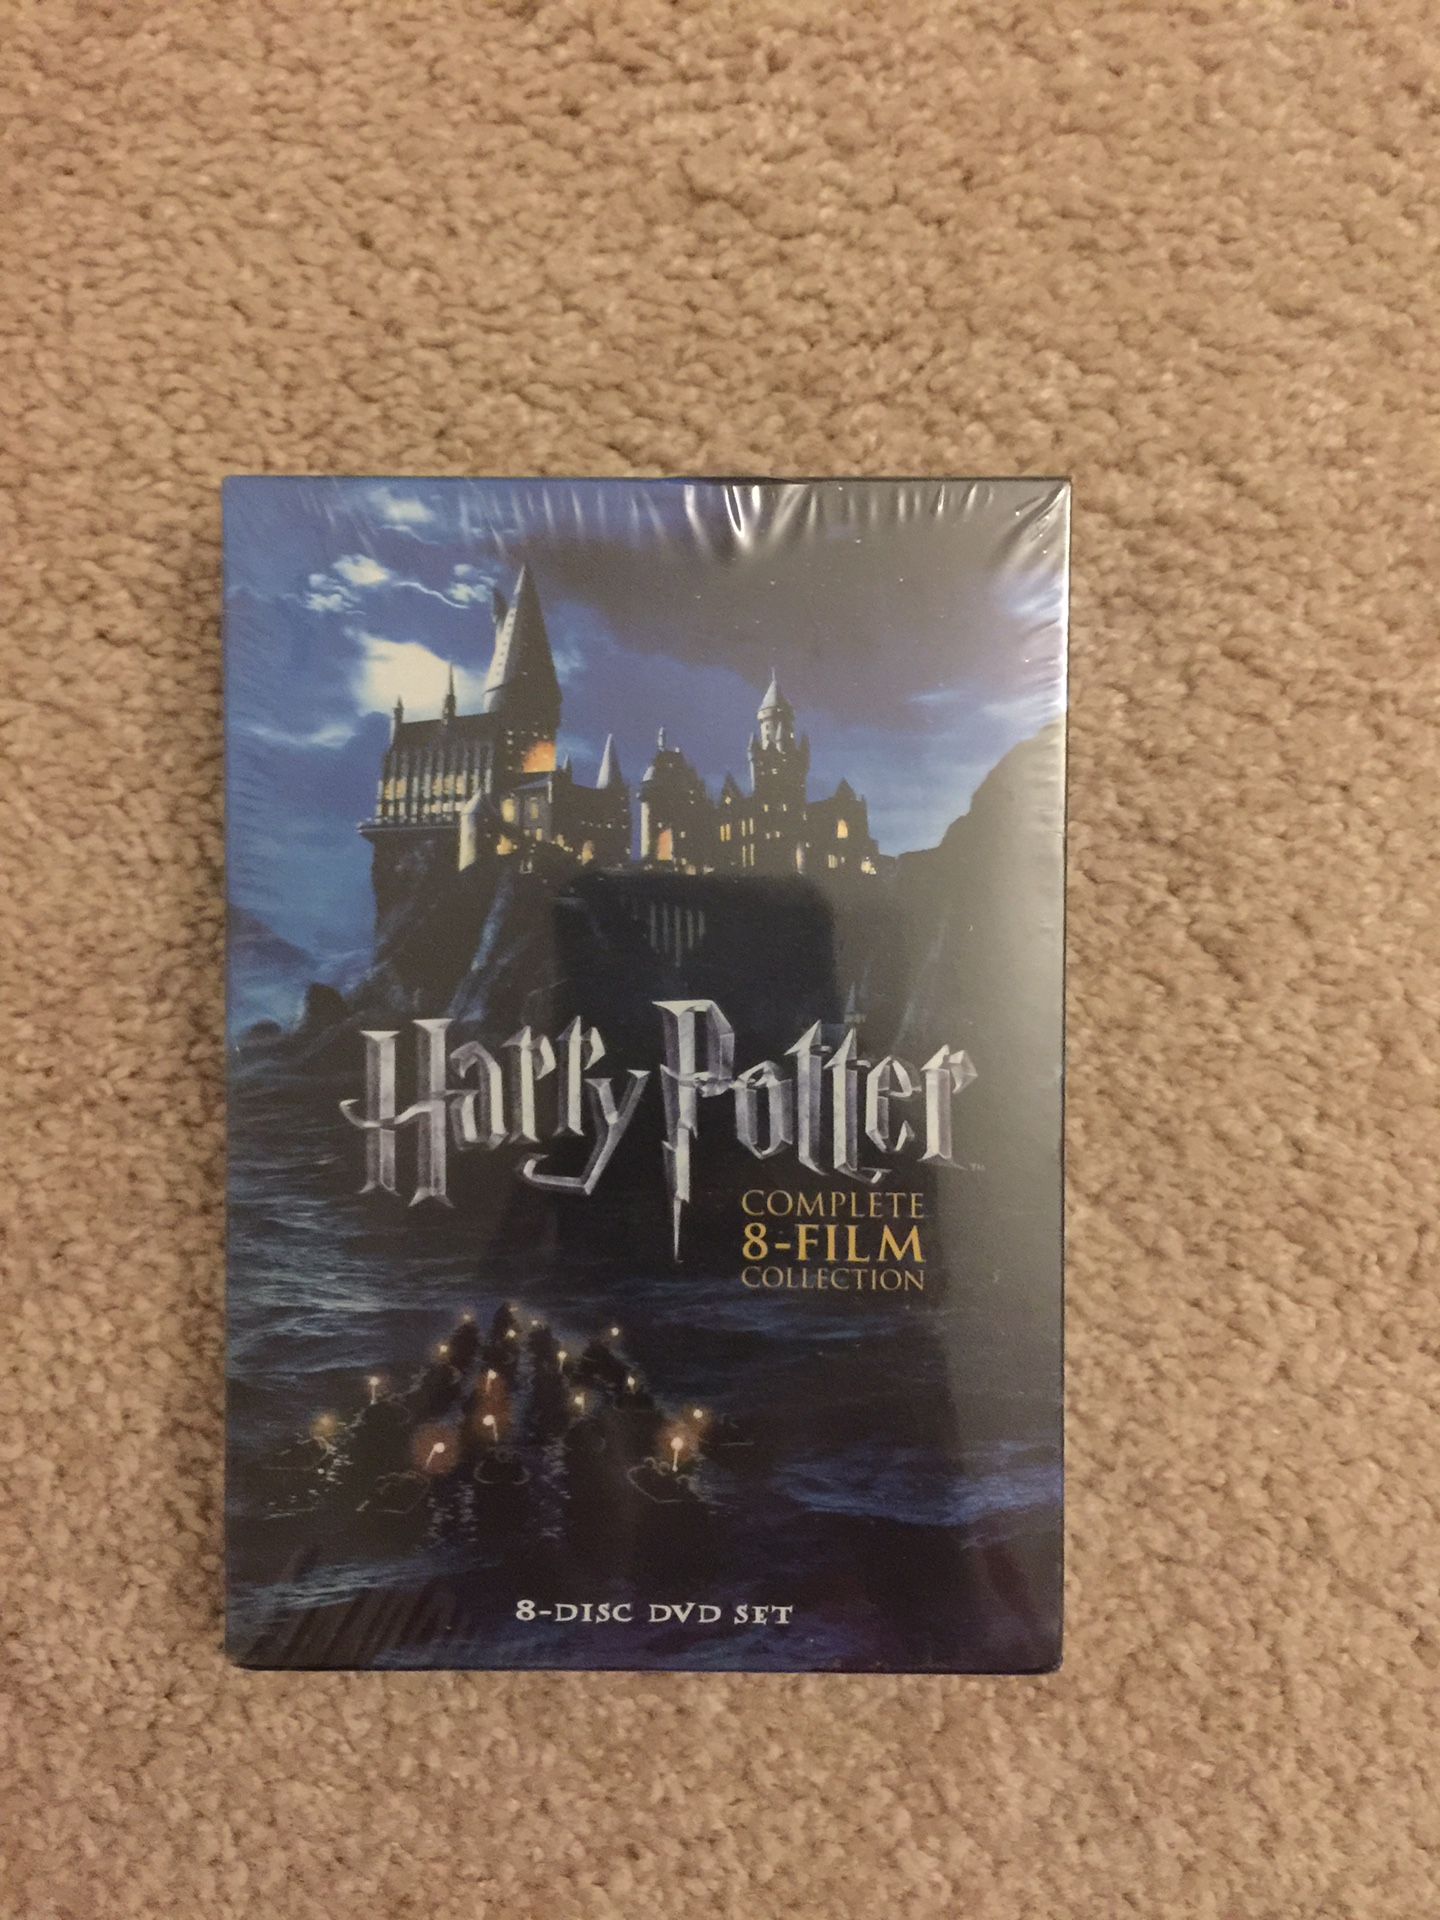 Harry Potter DVD’s full set